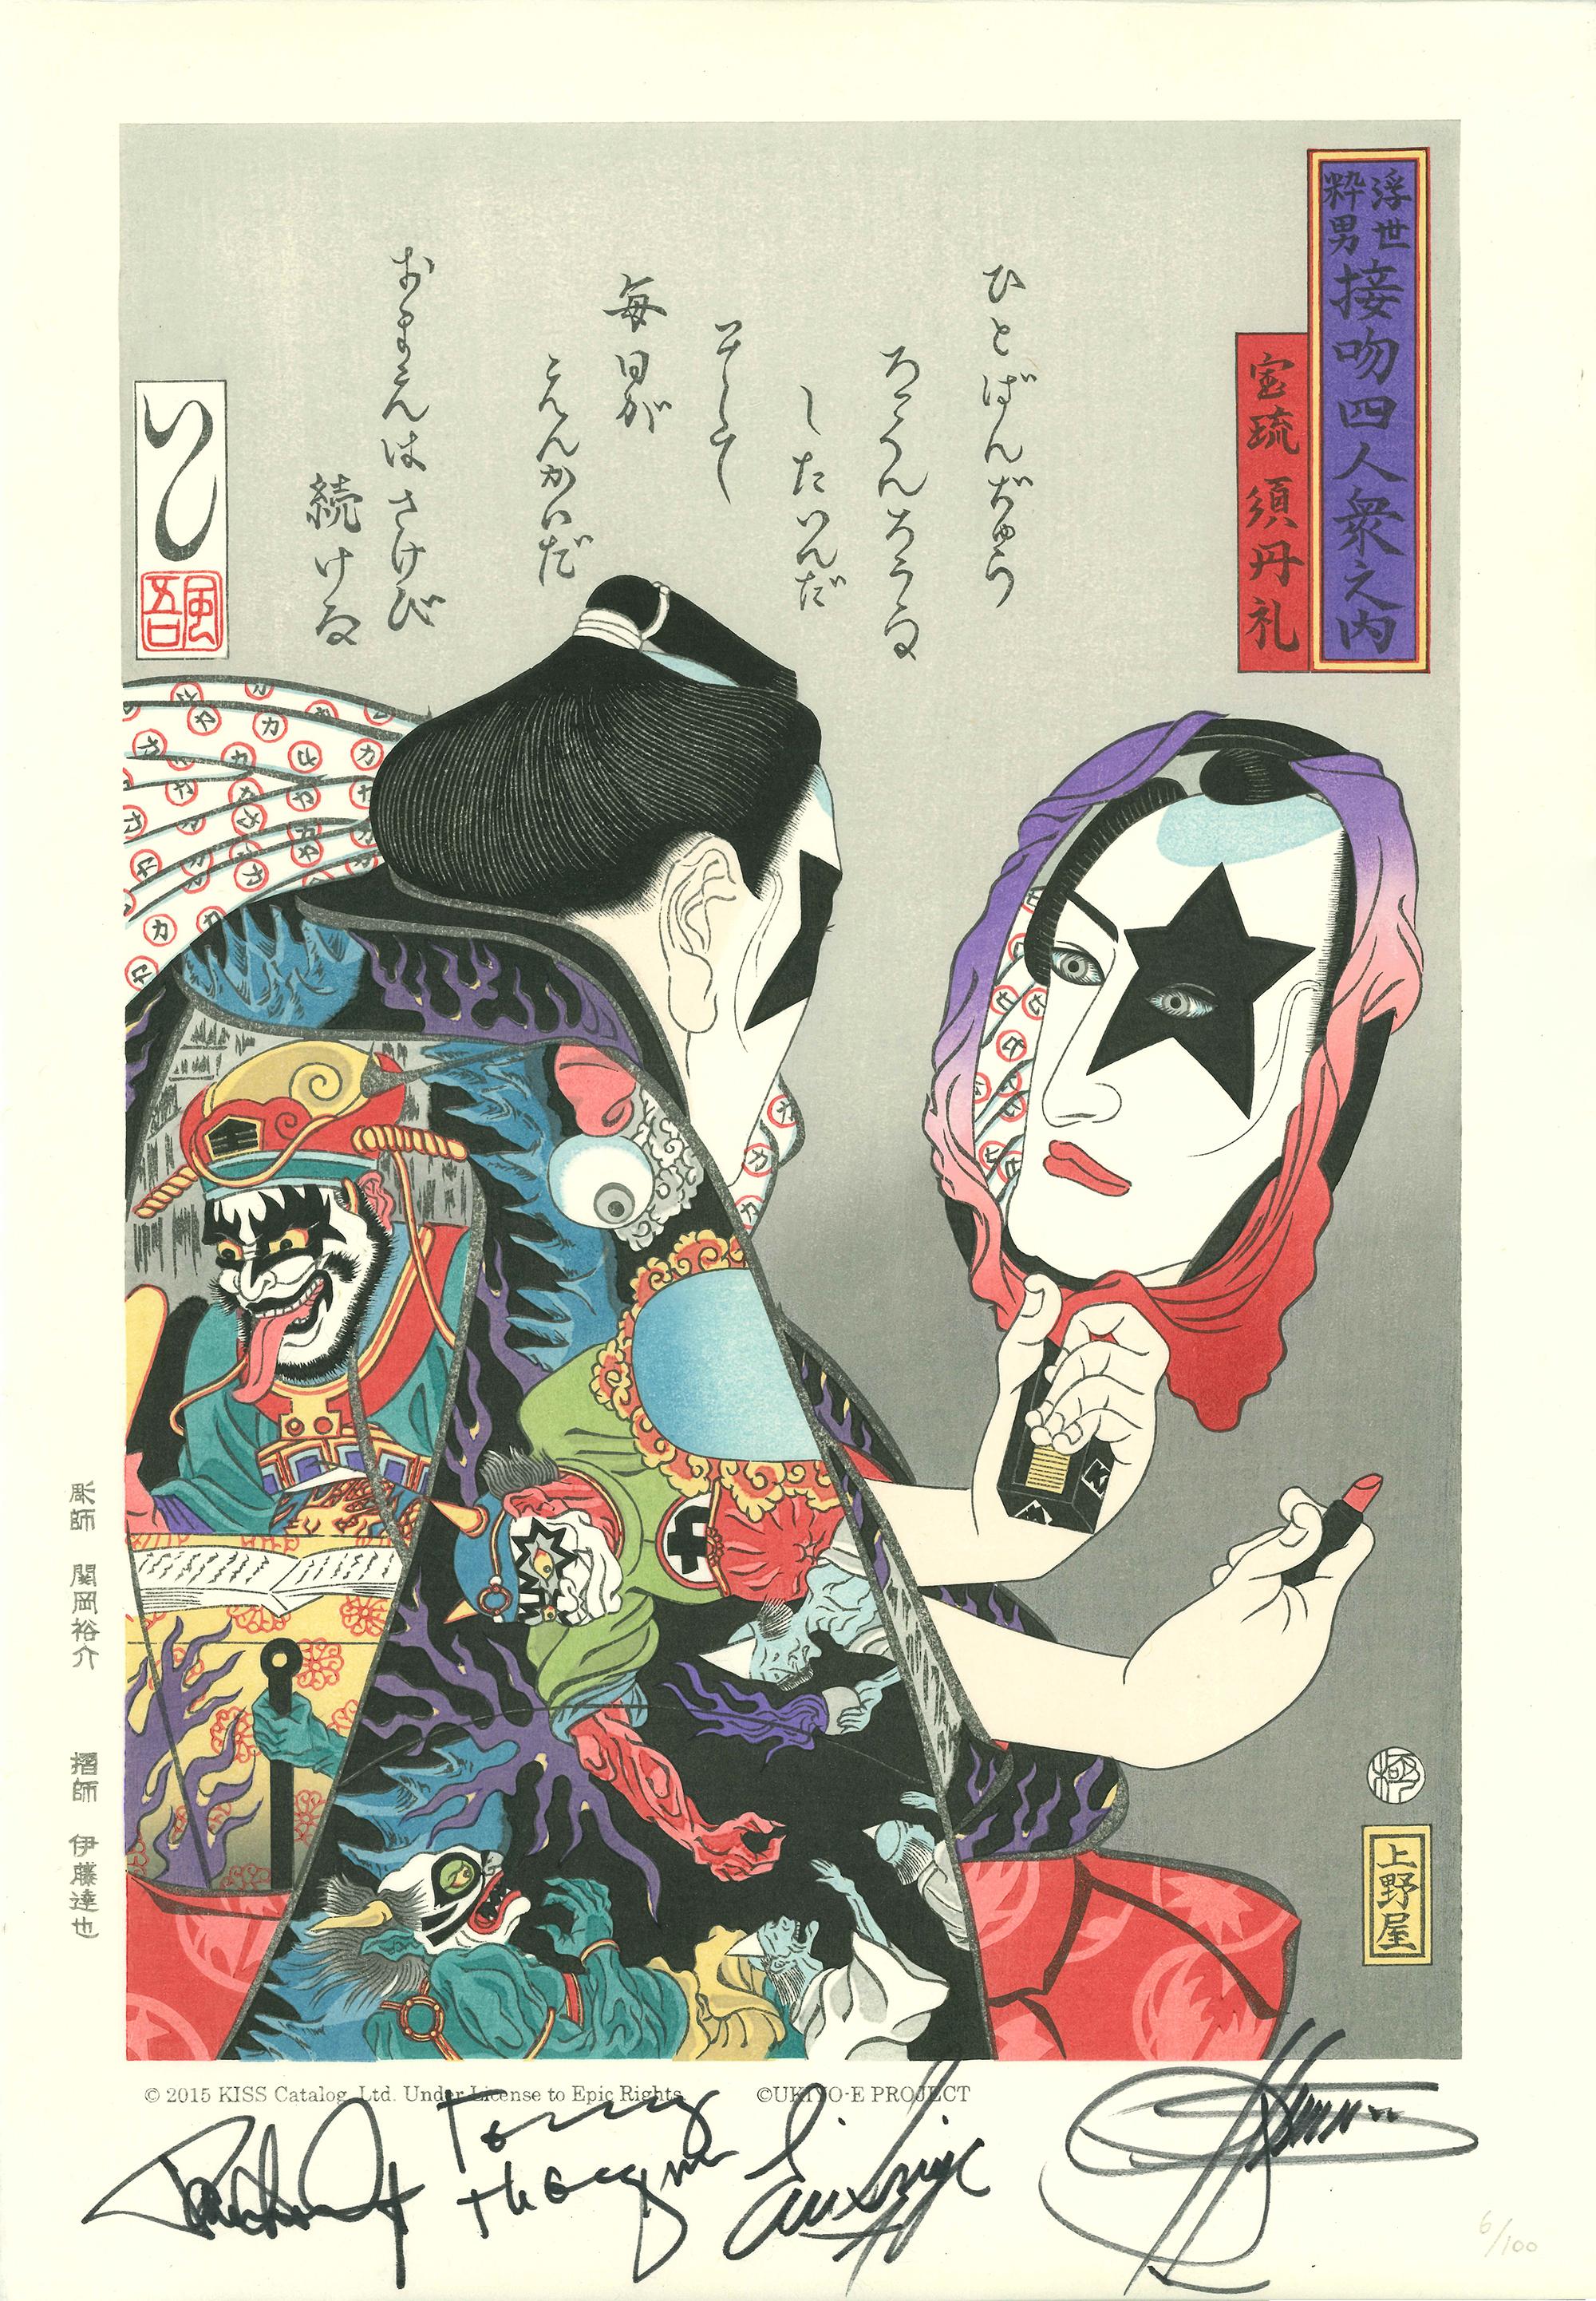 UKIYO-E PROJECT Portrait Print - Paul Stanley (autographed)